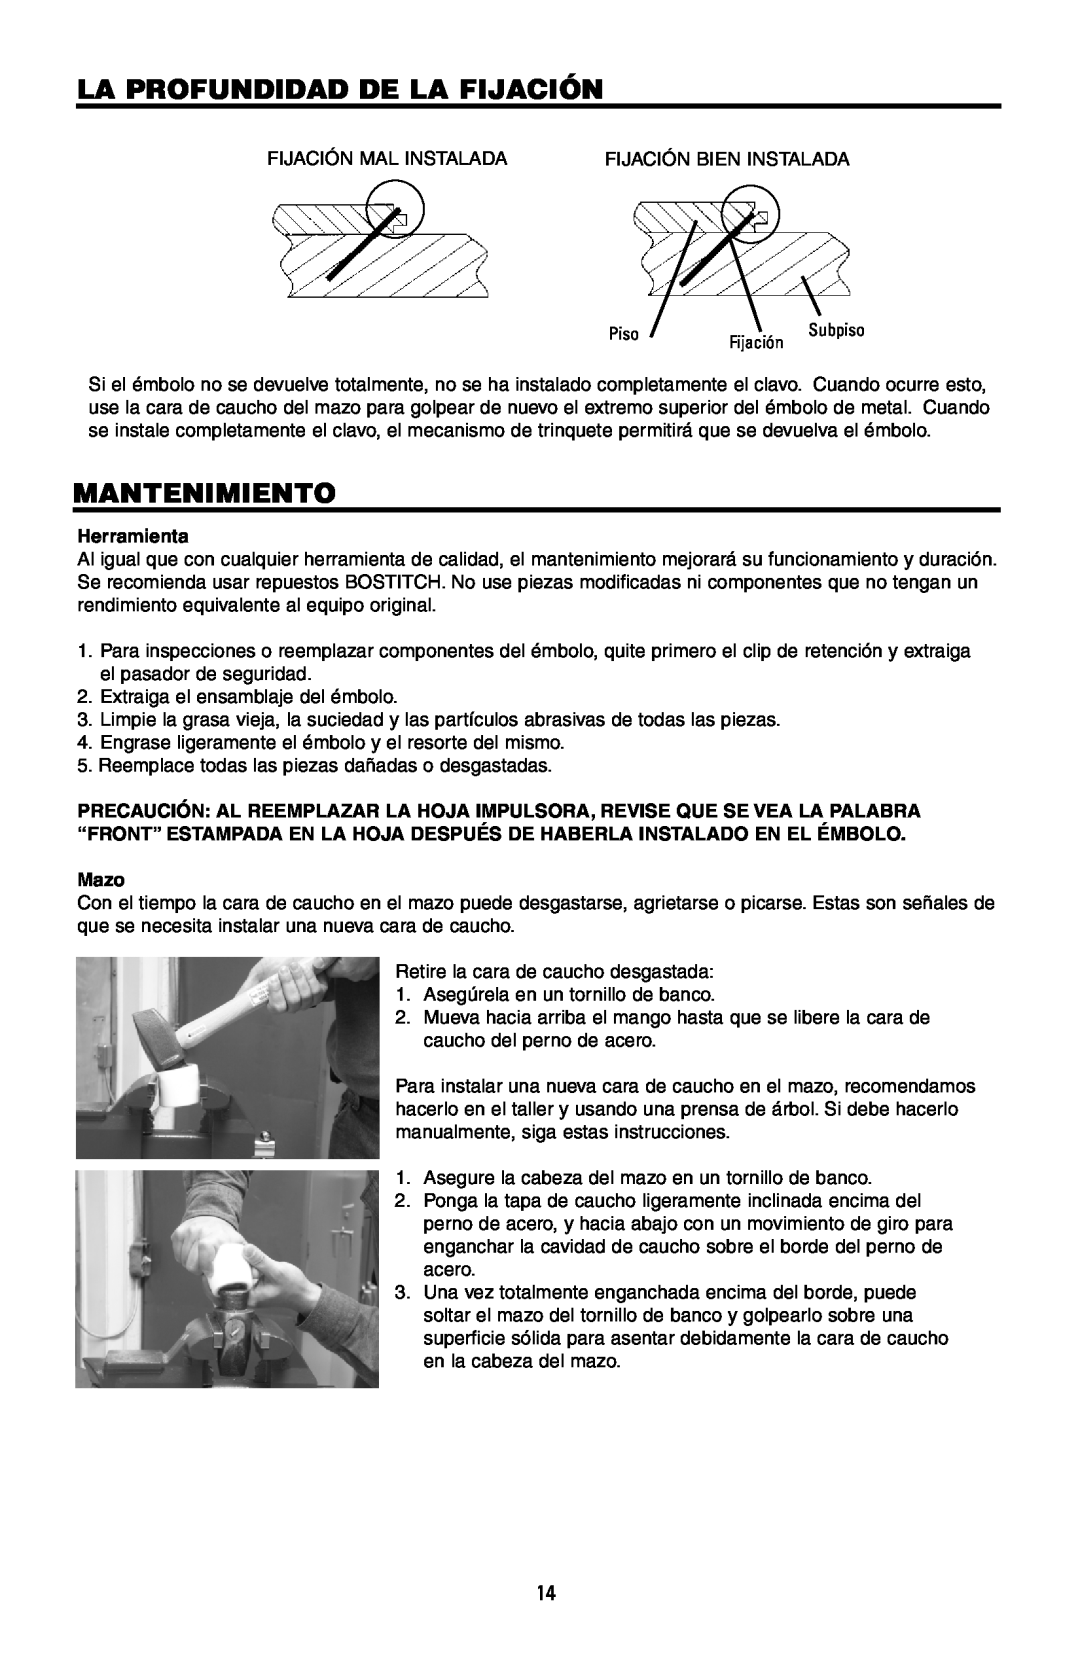 Intec MFN-200 manual La Profundidad De La Fijación, Mantenimiento, Herramienta, Mazo 